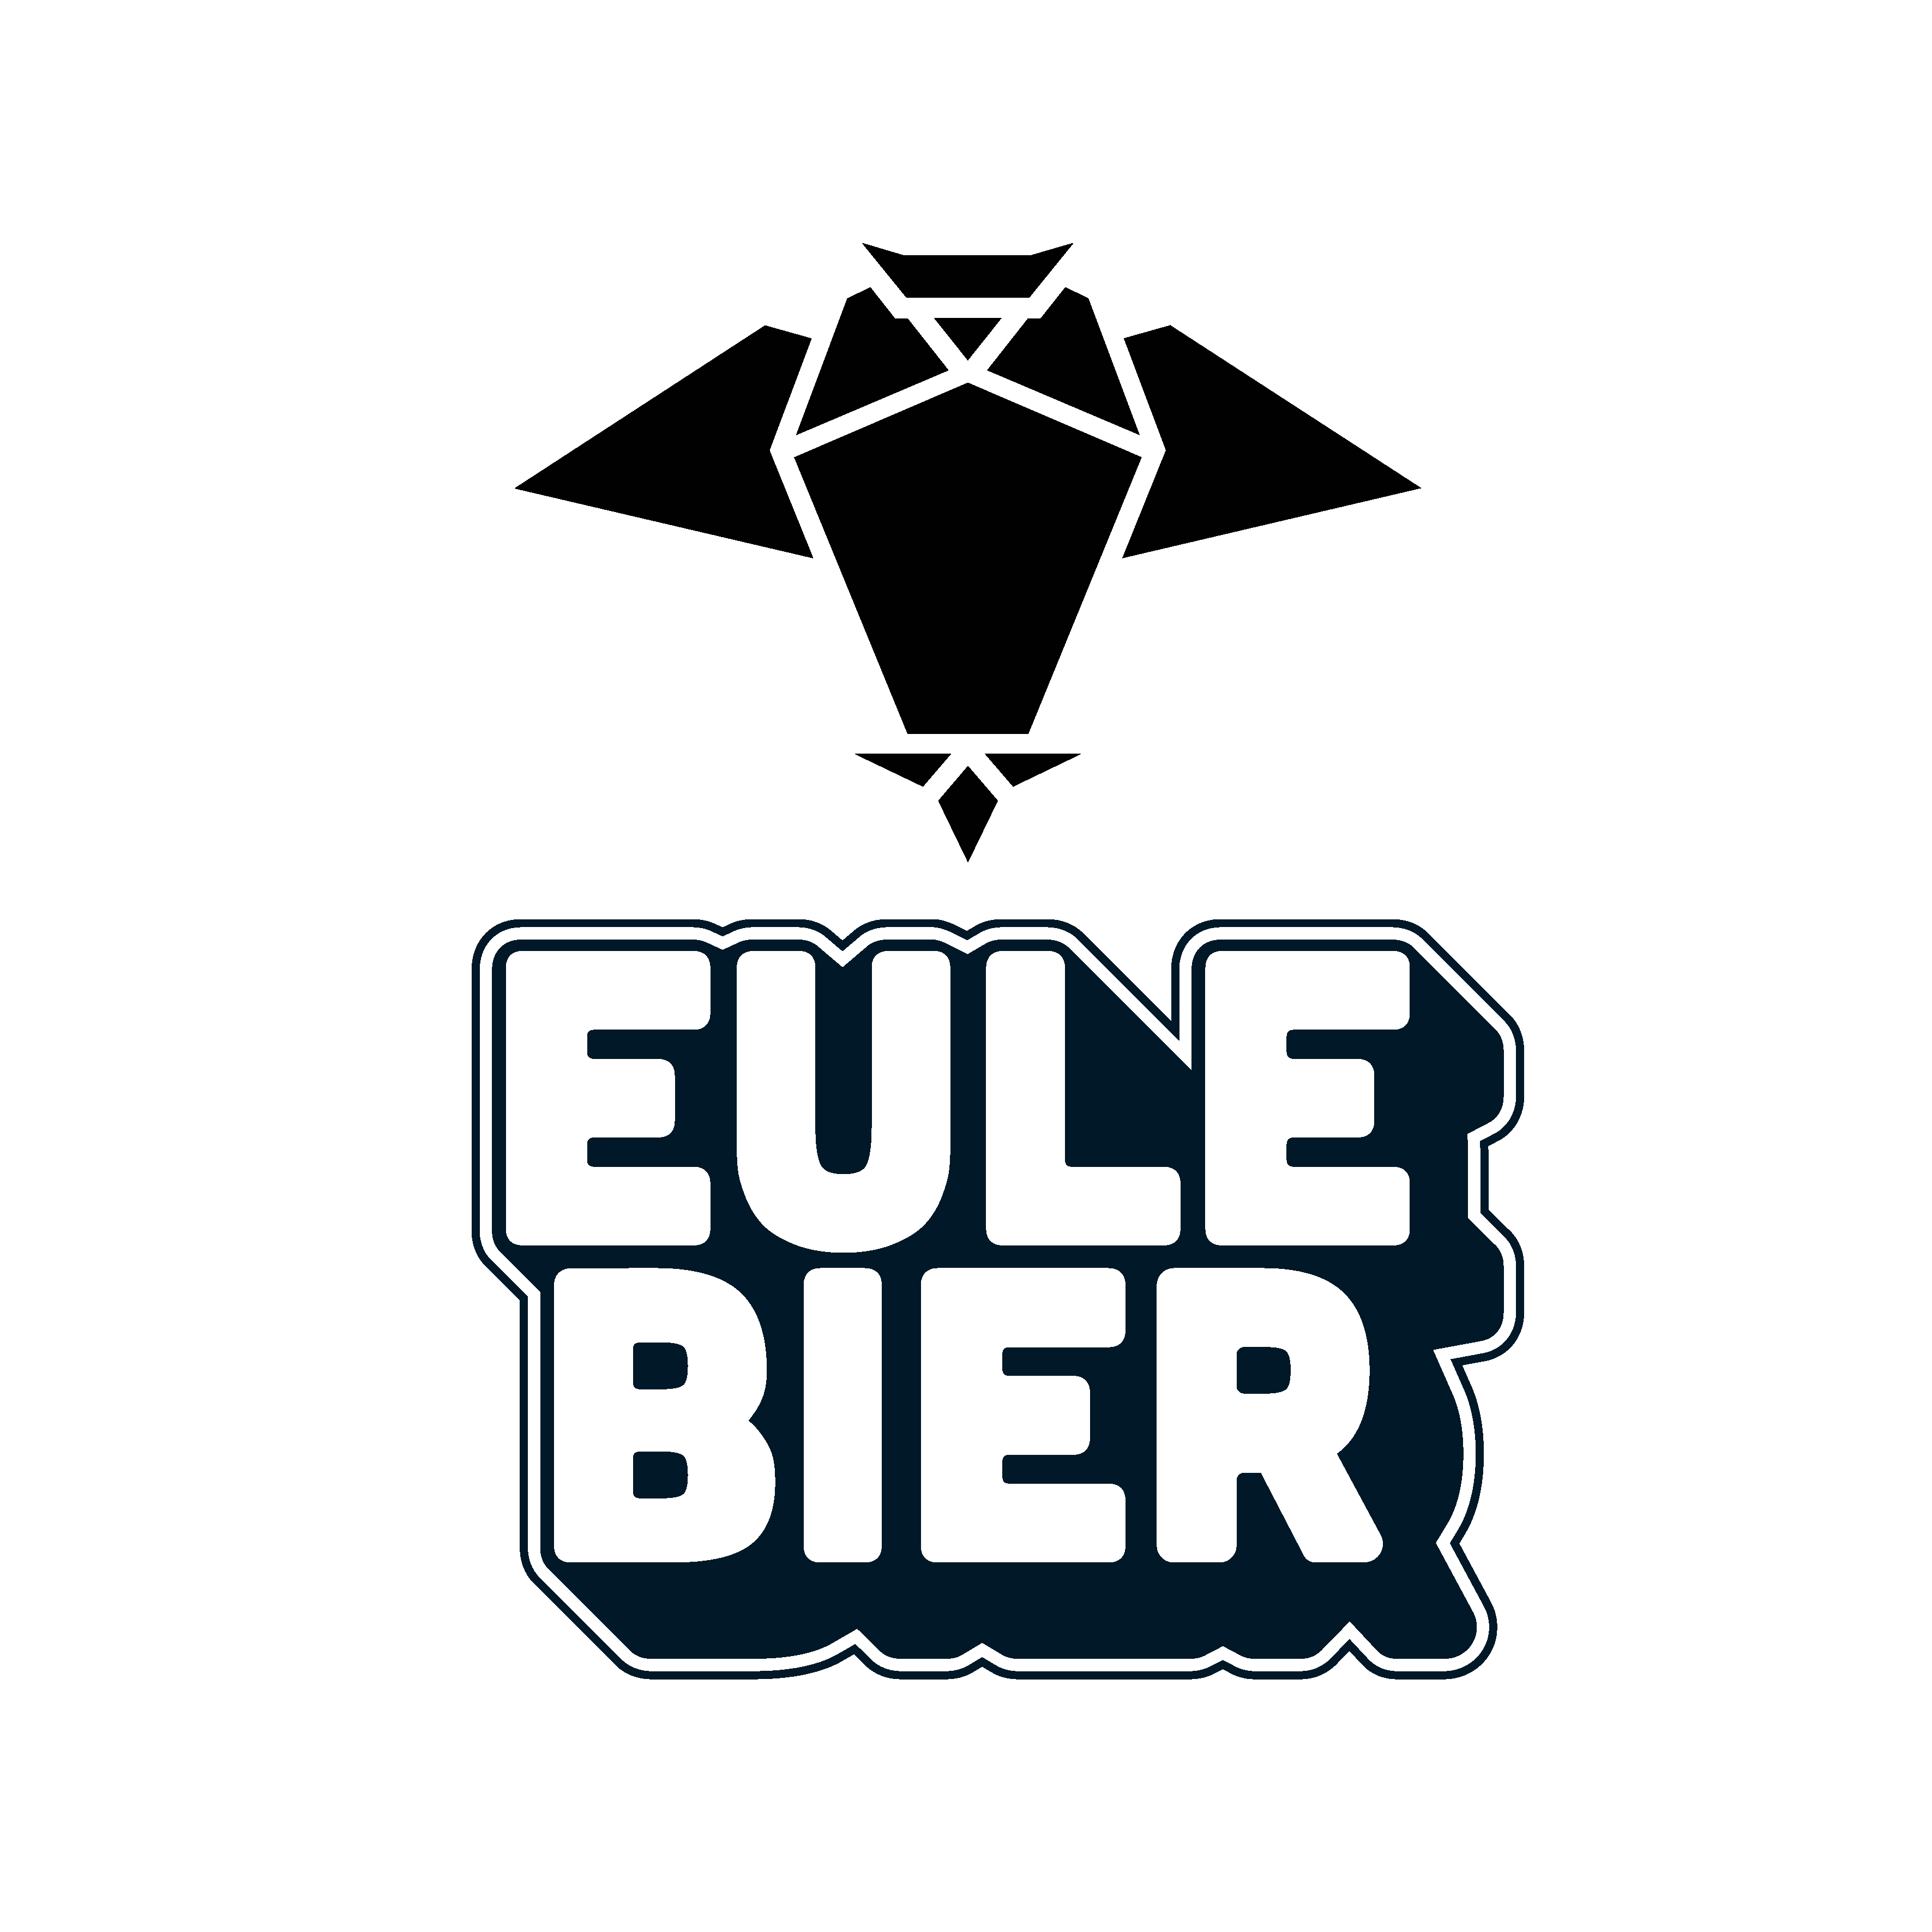 EULE Bier